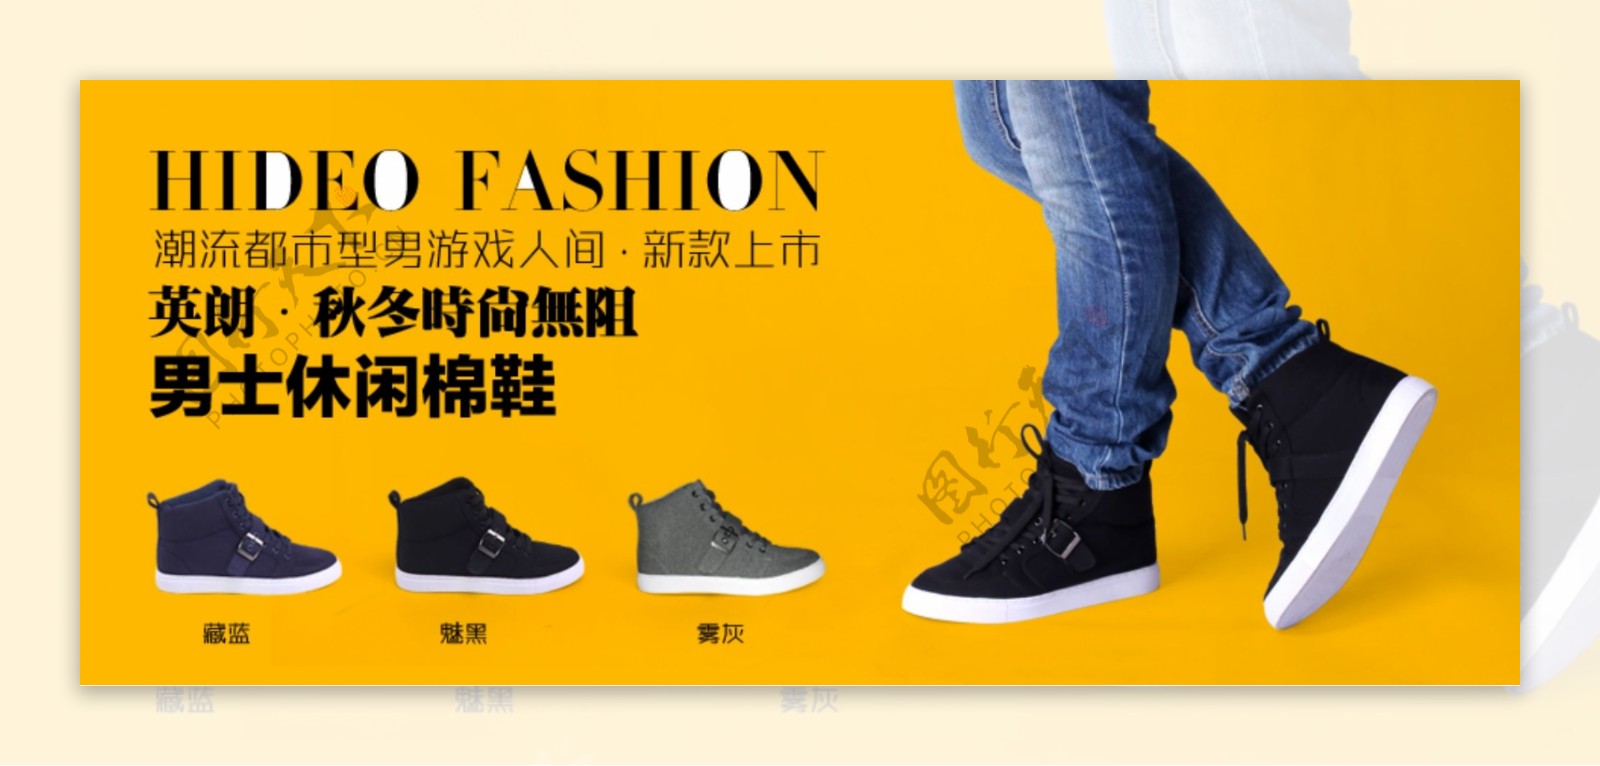 鞋子广告淘宝视觉设计图片